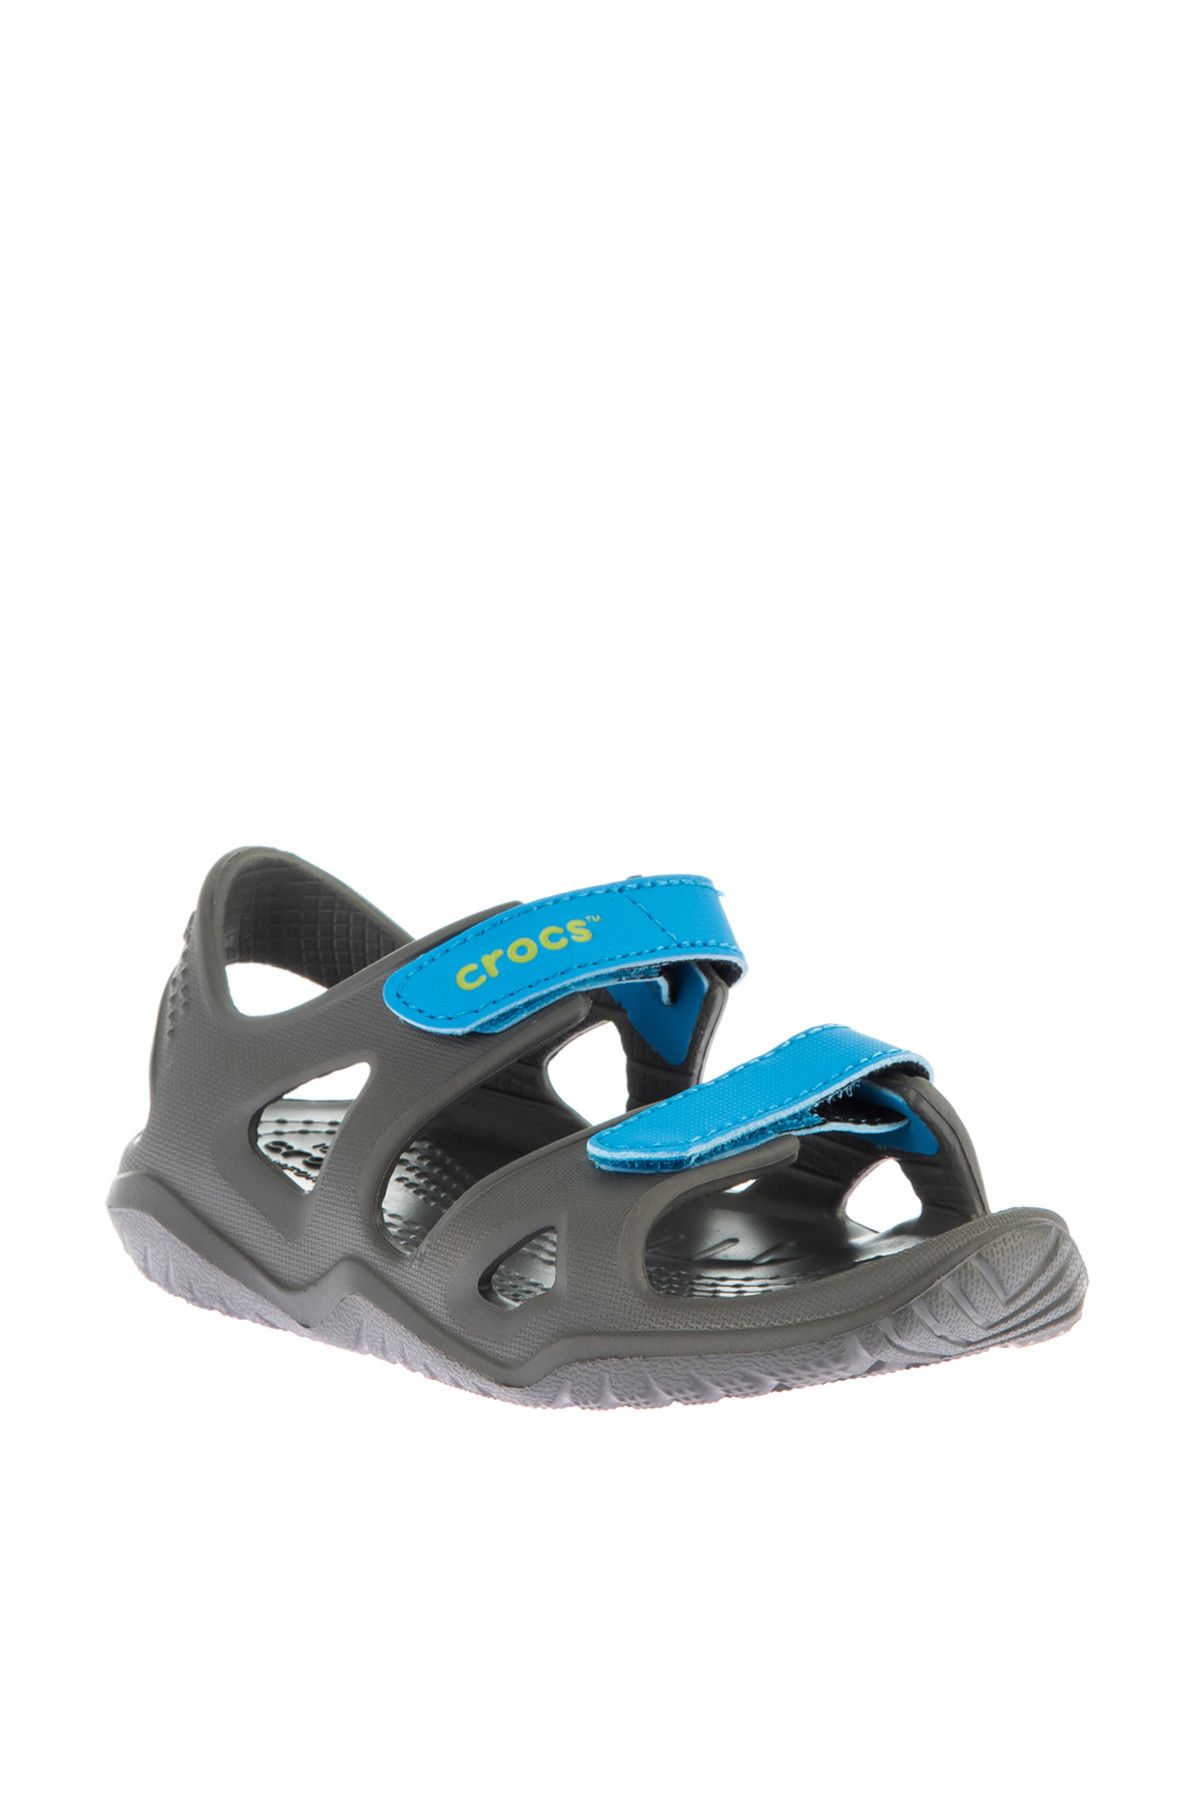 Crocs Gri Unisex Çocuk Sandalet 204988